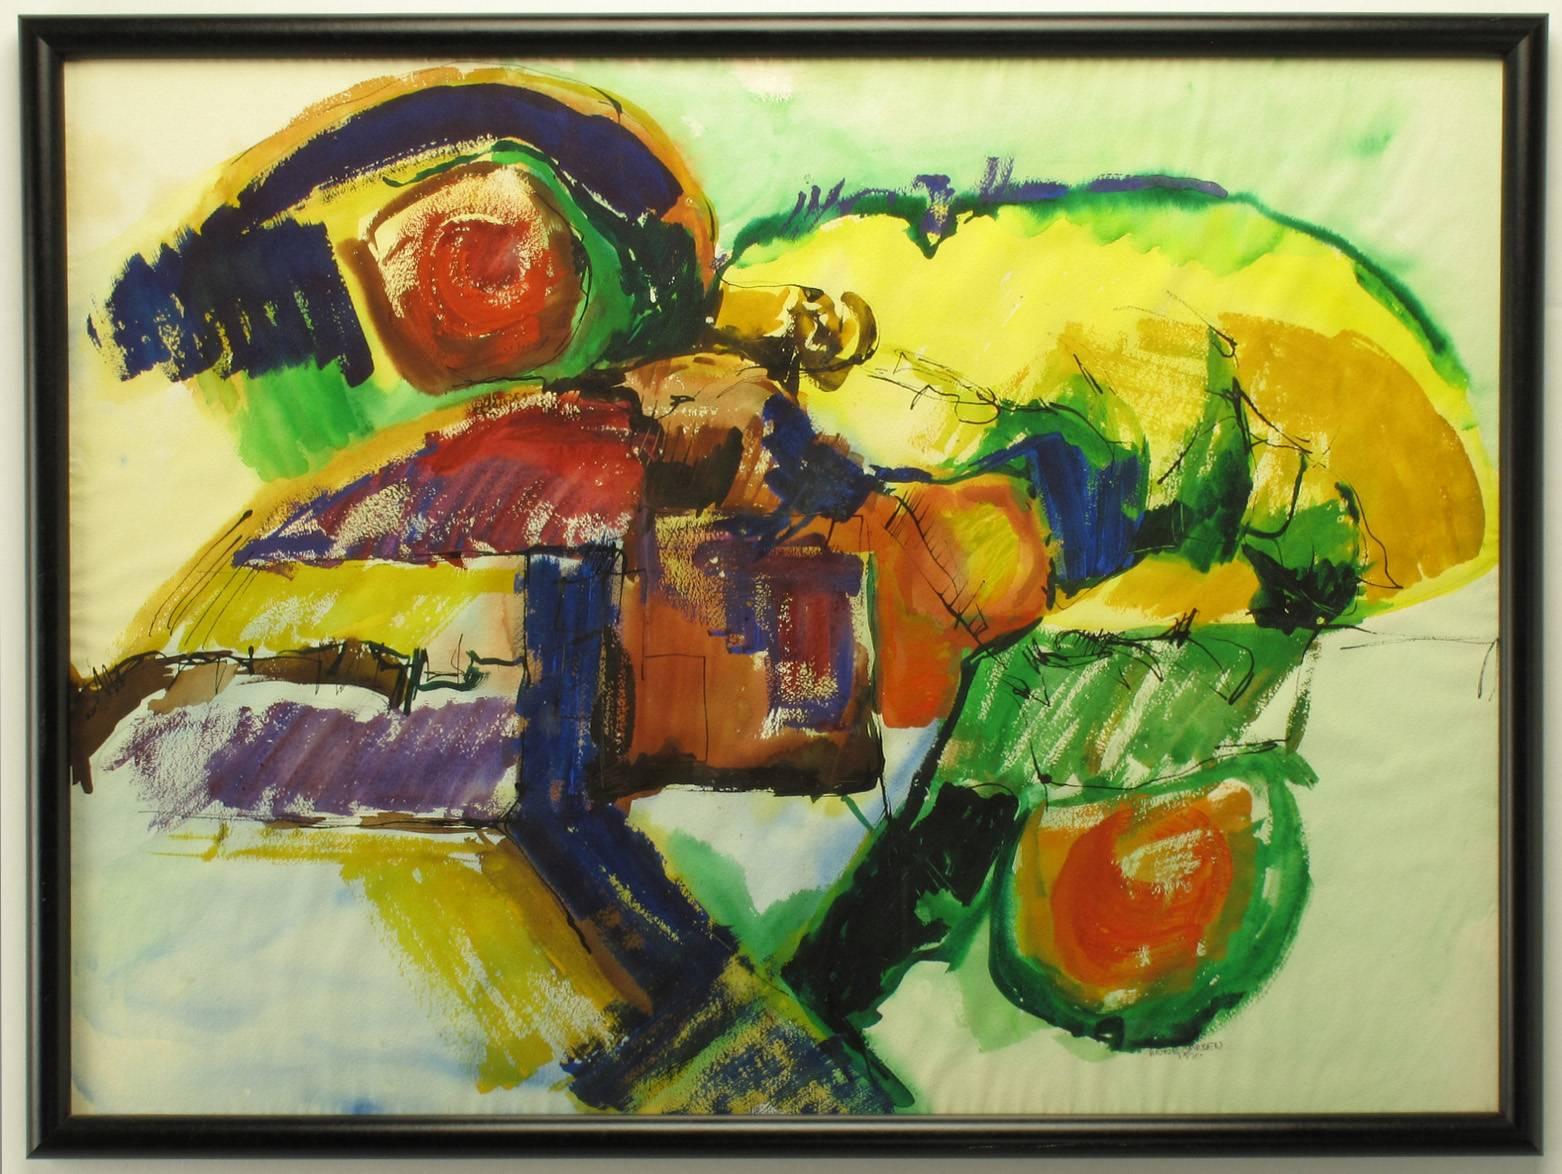 Abstraktes Gemälde in Mischtechnik auf Aquarellpapier von Anne Jansen, datiert 1970. Die Farbpalette umfasst hauptsächlich Grundfarben in Blau, Gelb, Grün und Rot. Die Zugabe von Tinte und Acryl verleiht der Aquarellbasis mehr Tiefe. Der Rahmen ist